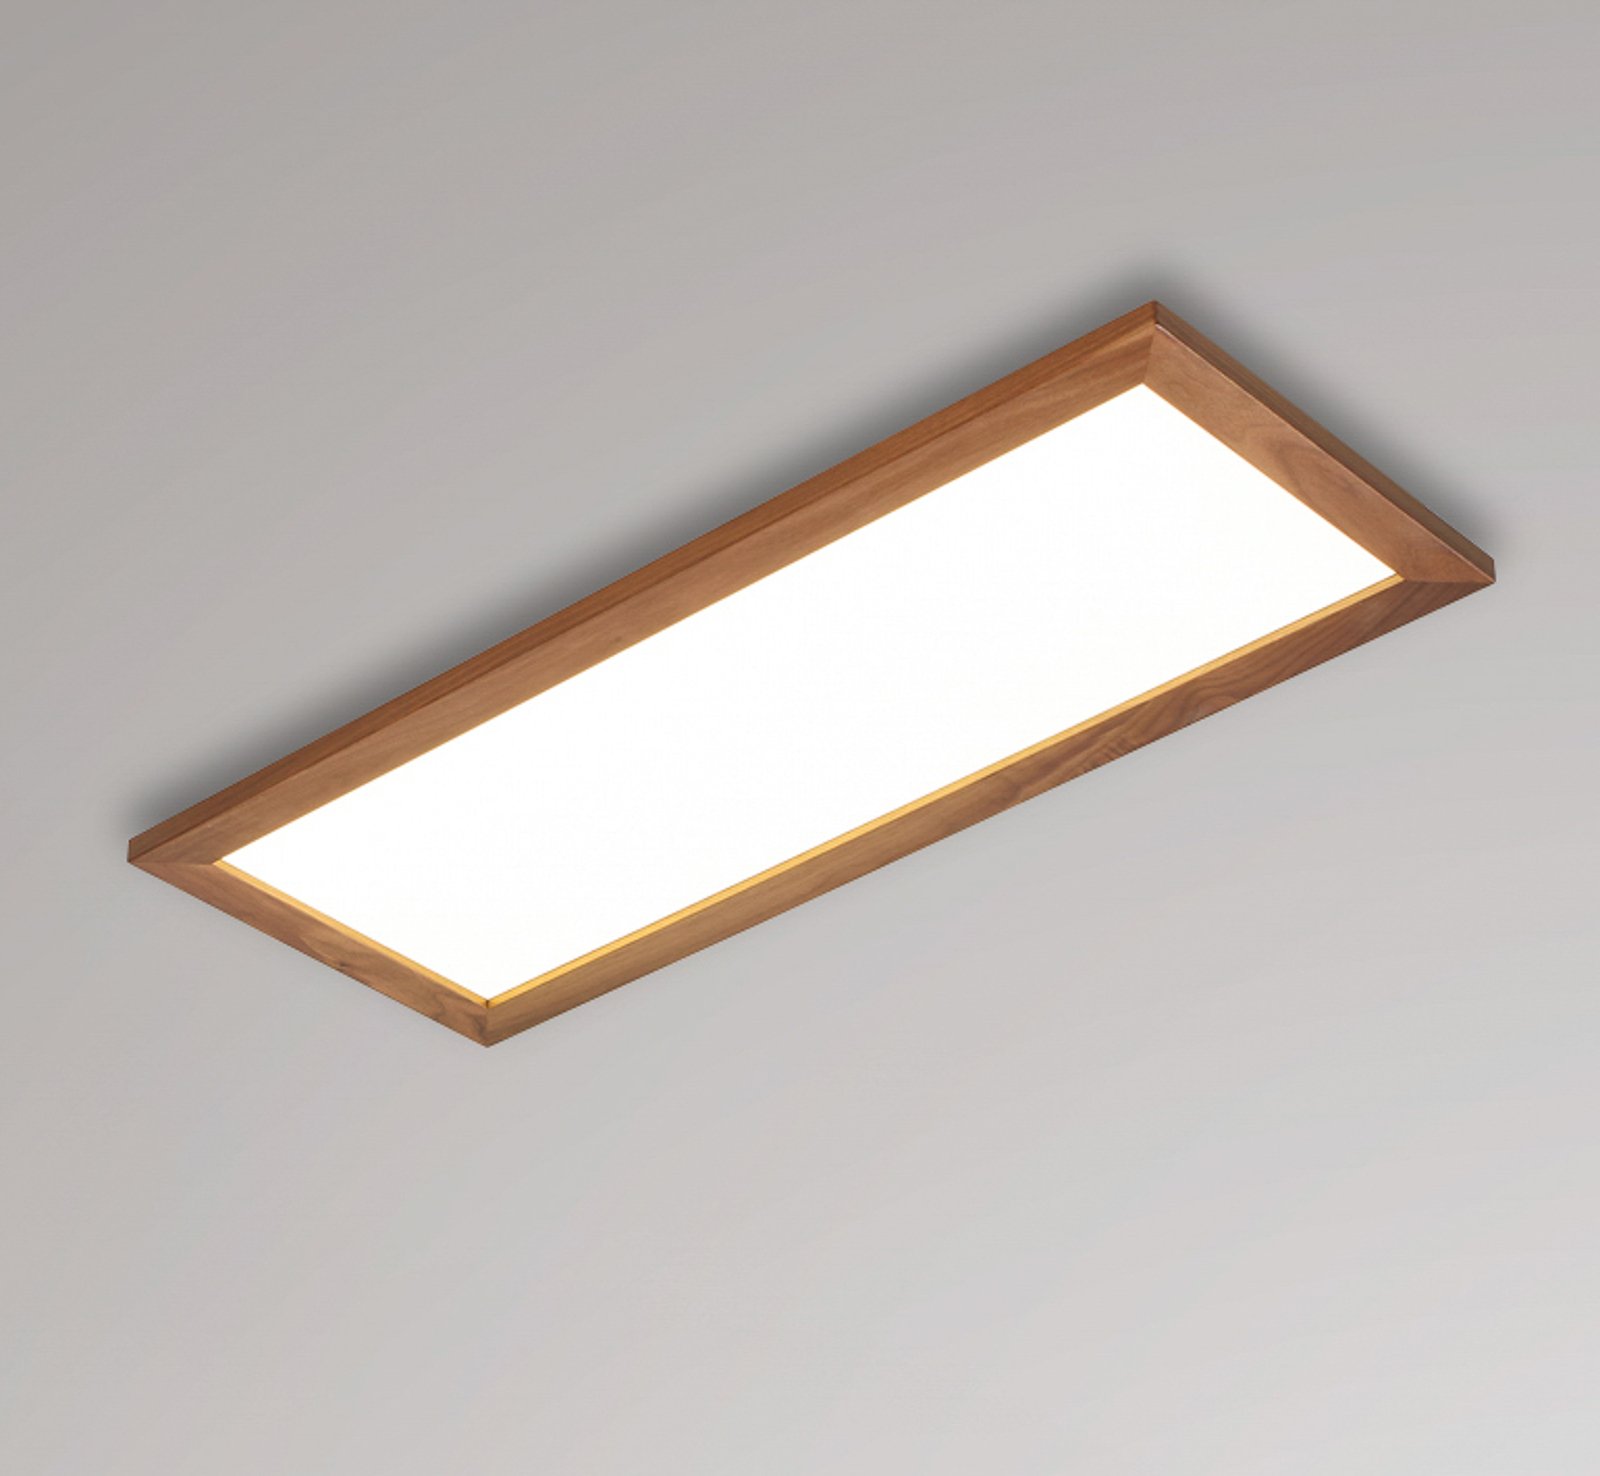 Quitani Aurinor LED panel, orech, 86 cm